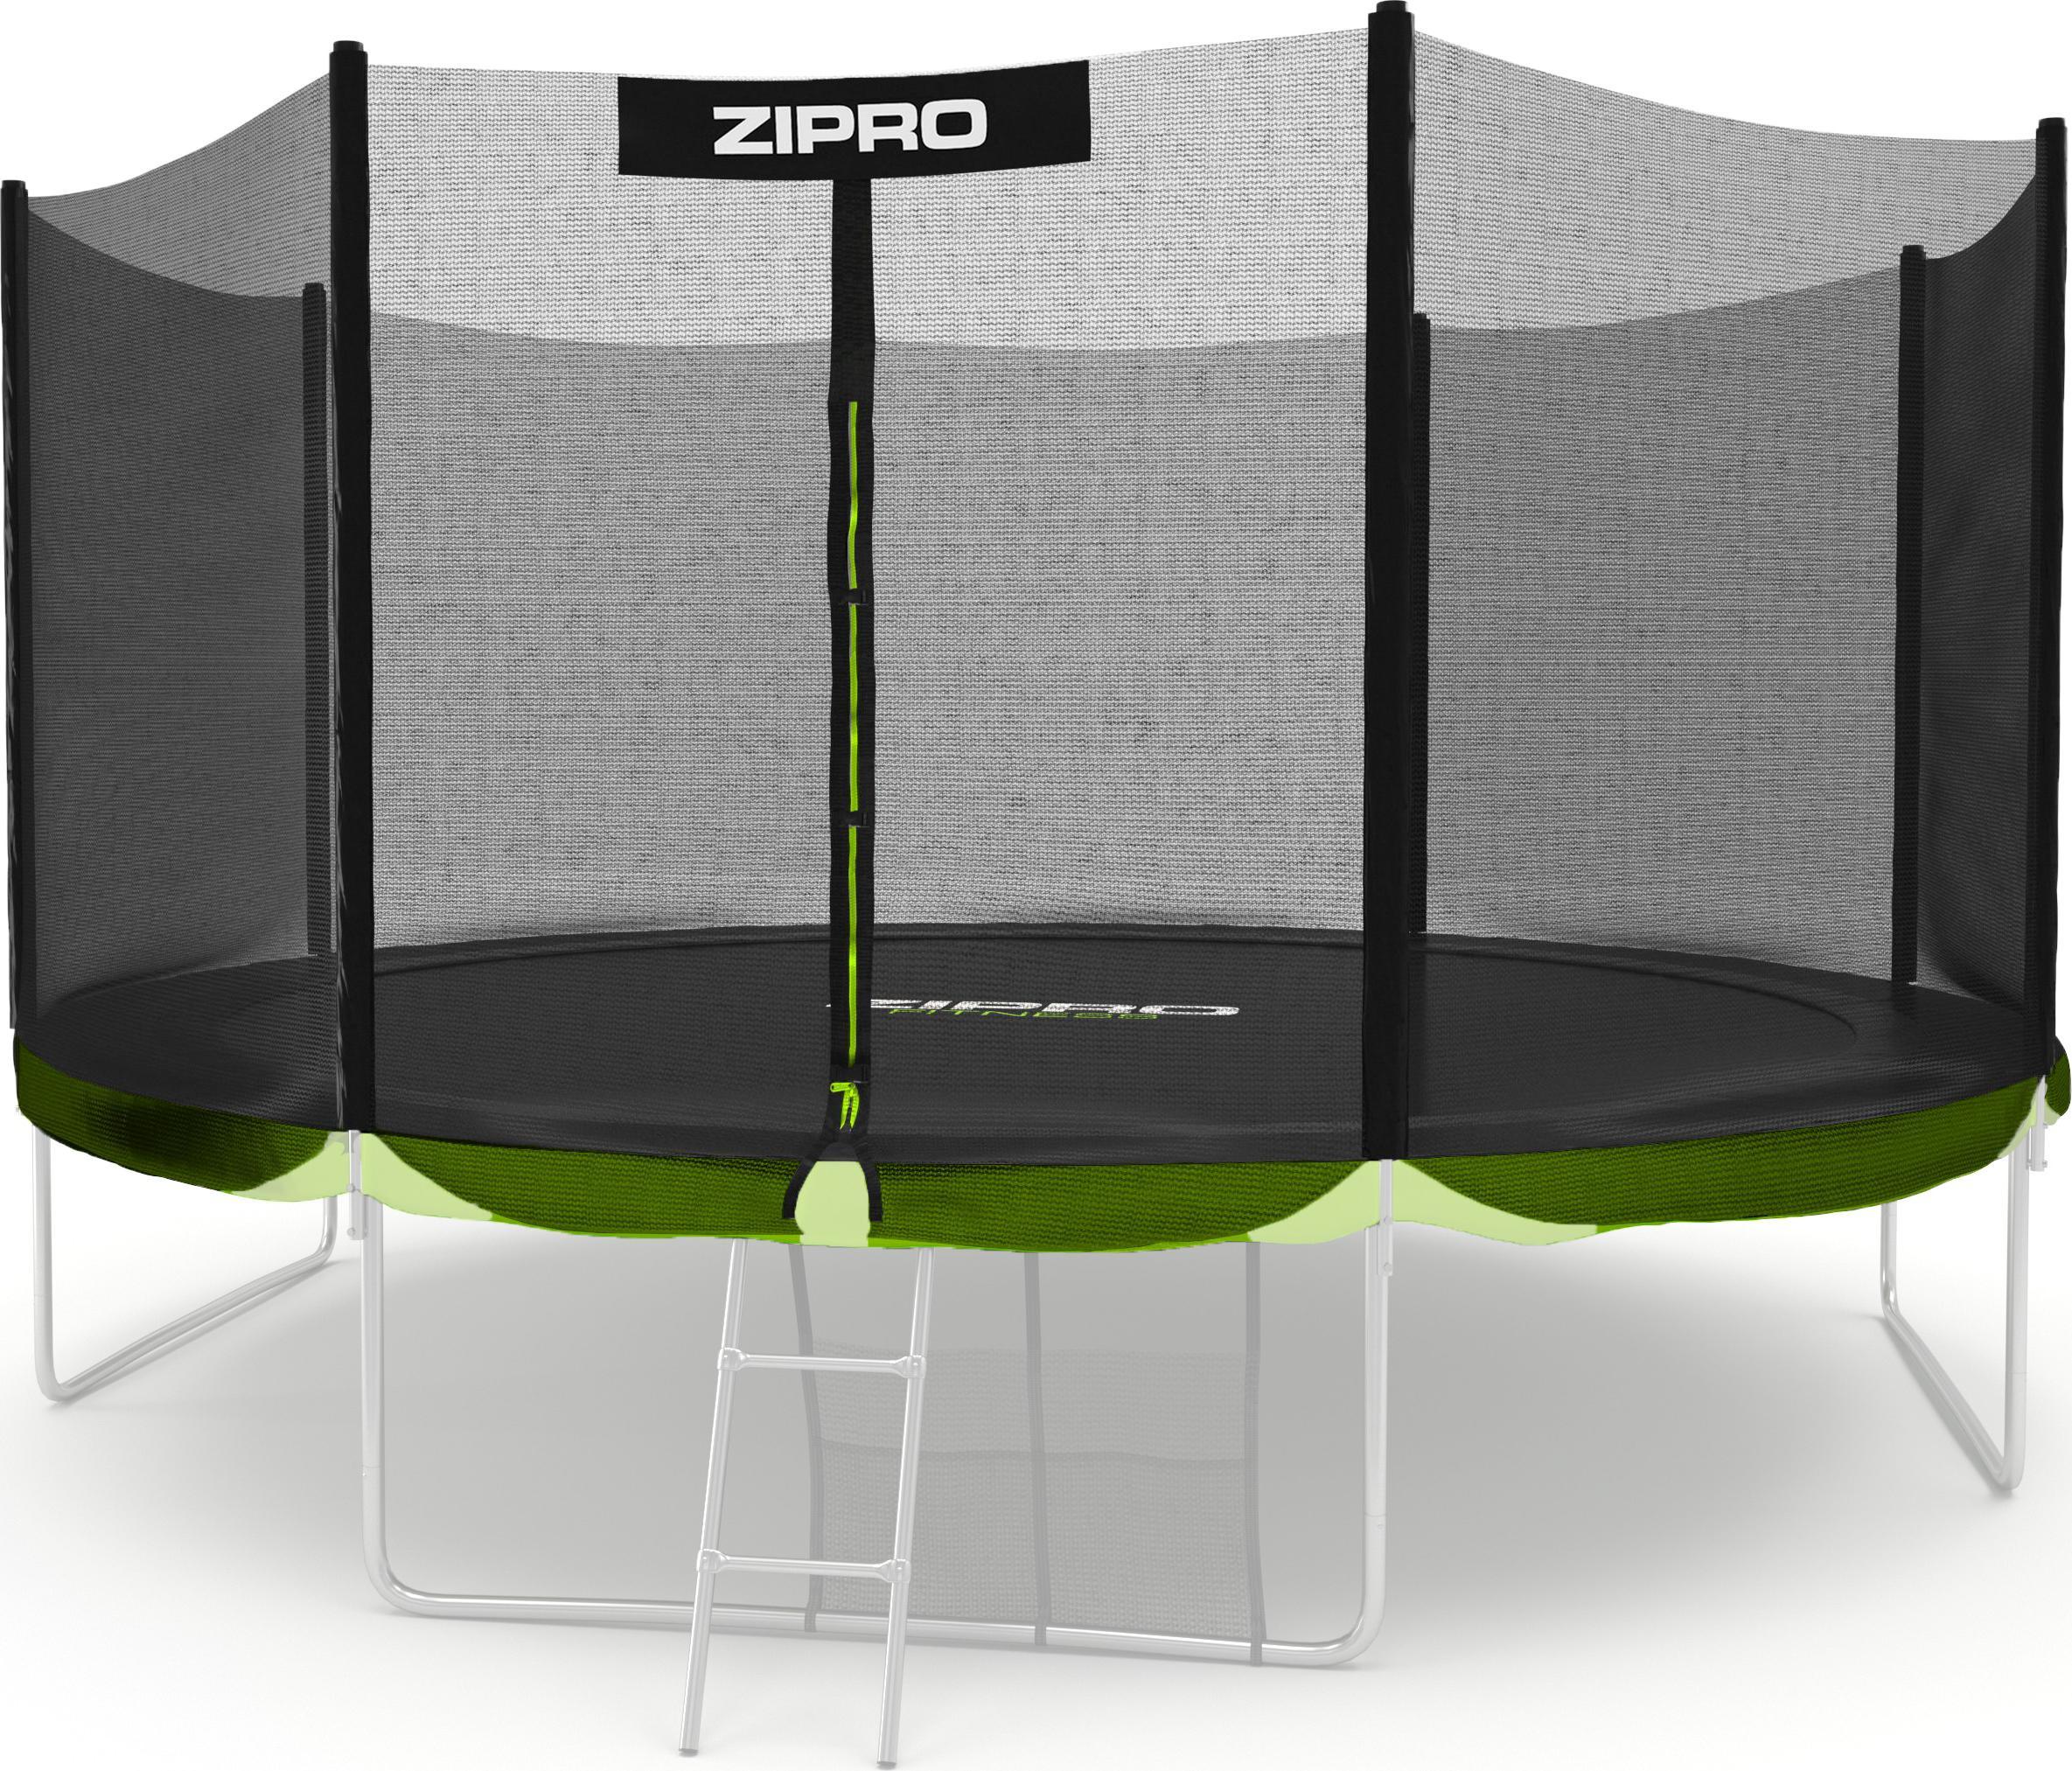 Zipro Siatka ochronna zewnetrzna do trampoliny 8FT/252cm 5825218